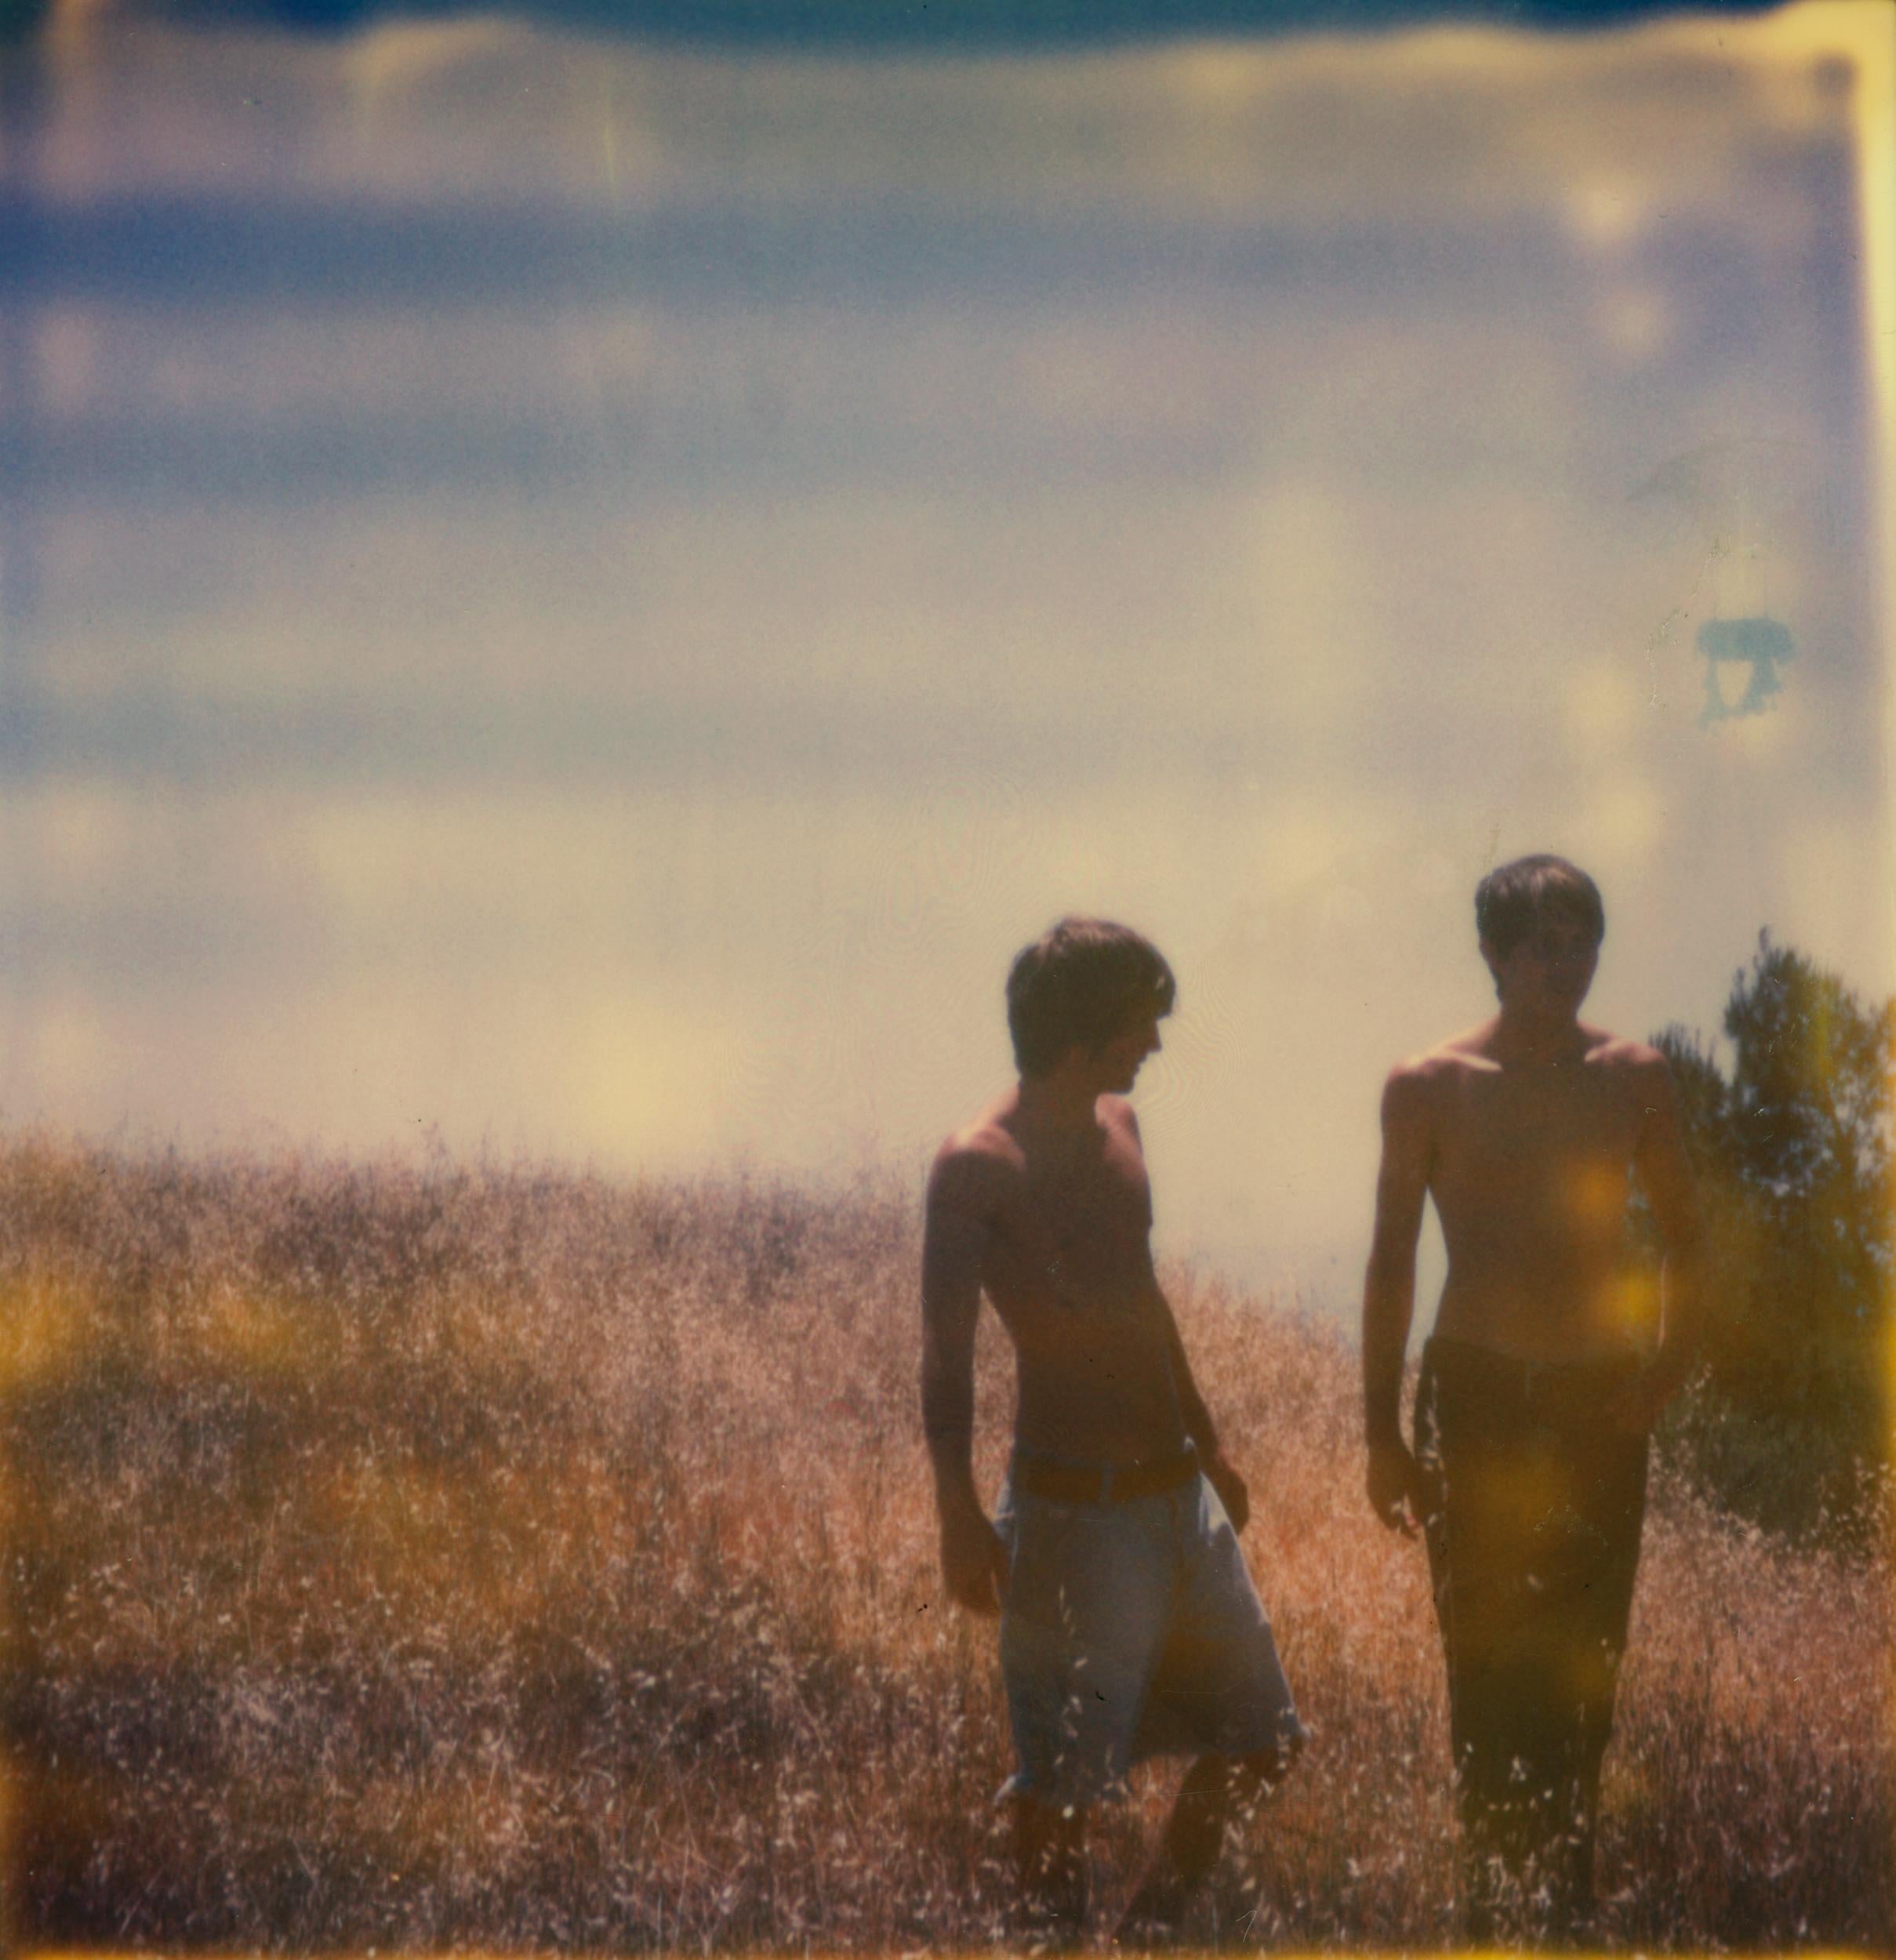 Stefanie Schneider Color Photograph - Renée's Dream - The Boys (Days of Heaven) - Landscape, Horse, Boys